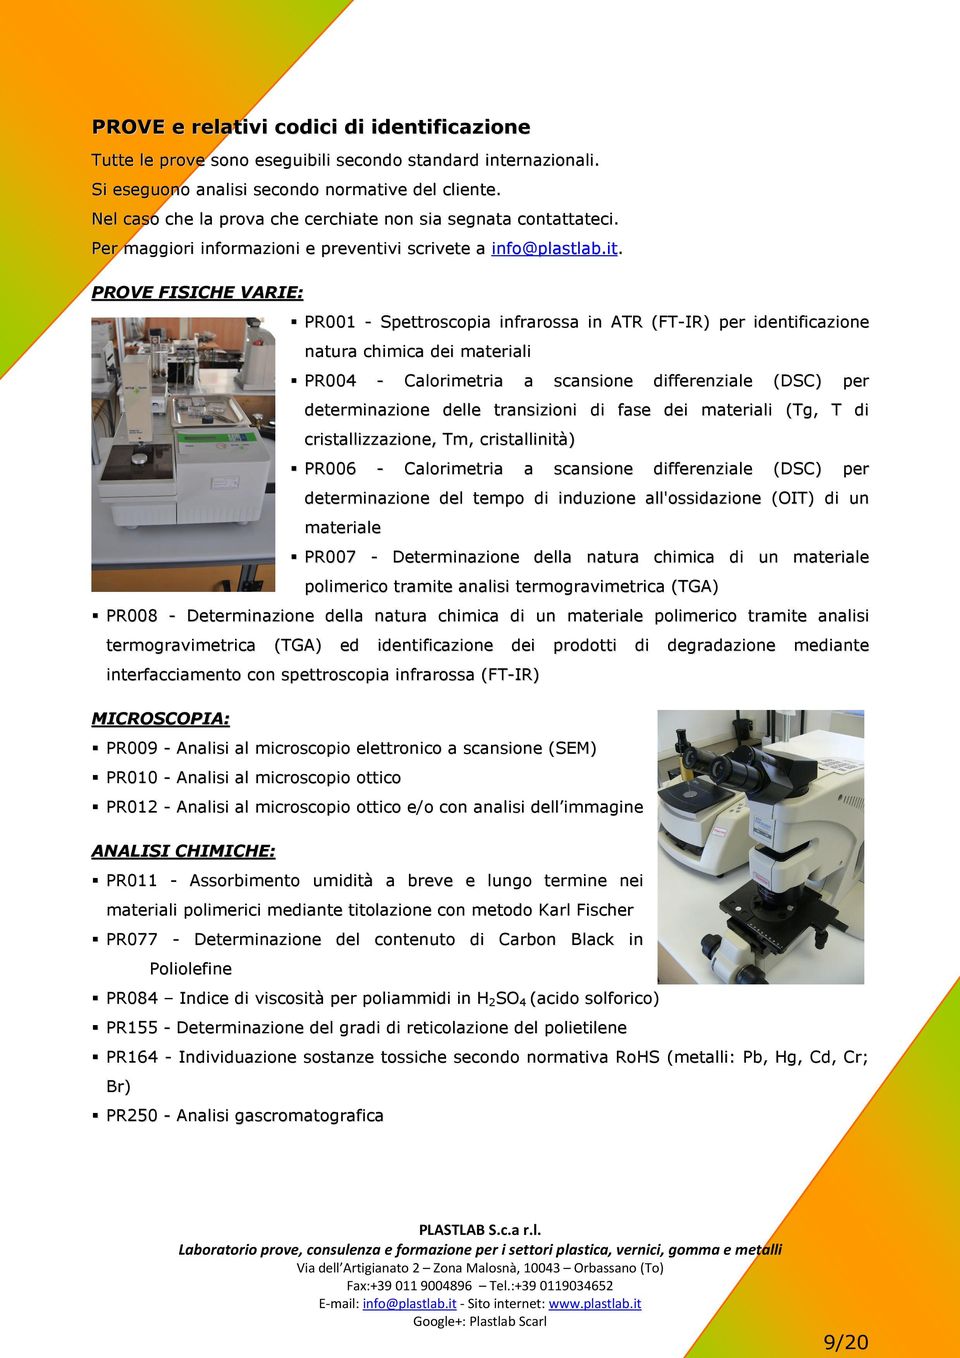 PROVE FISICHE VARIE: PR001 - Spettroscopia infrarossa in ATR (FT-IR) per identificazione natura chimica dei materiali PR004 - Calorimetria a scansione differenziale ( DS C ) per determinazione delle